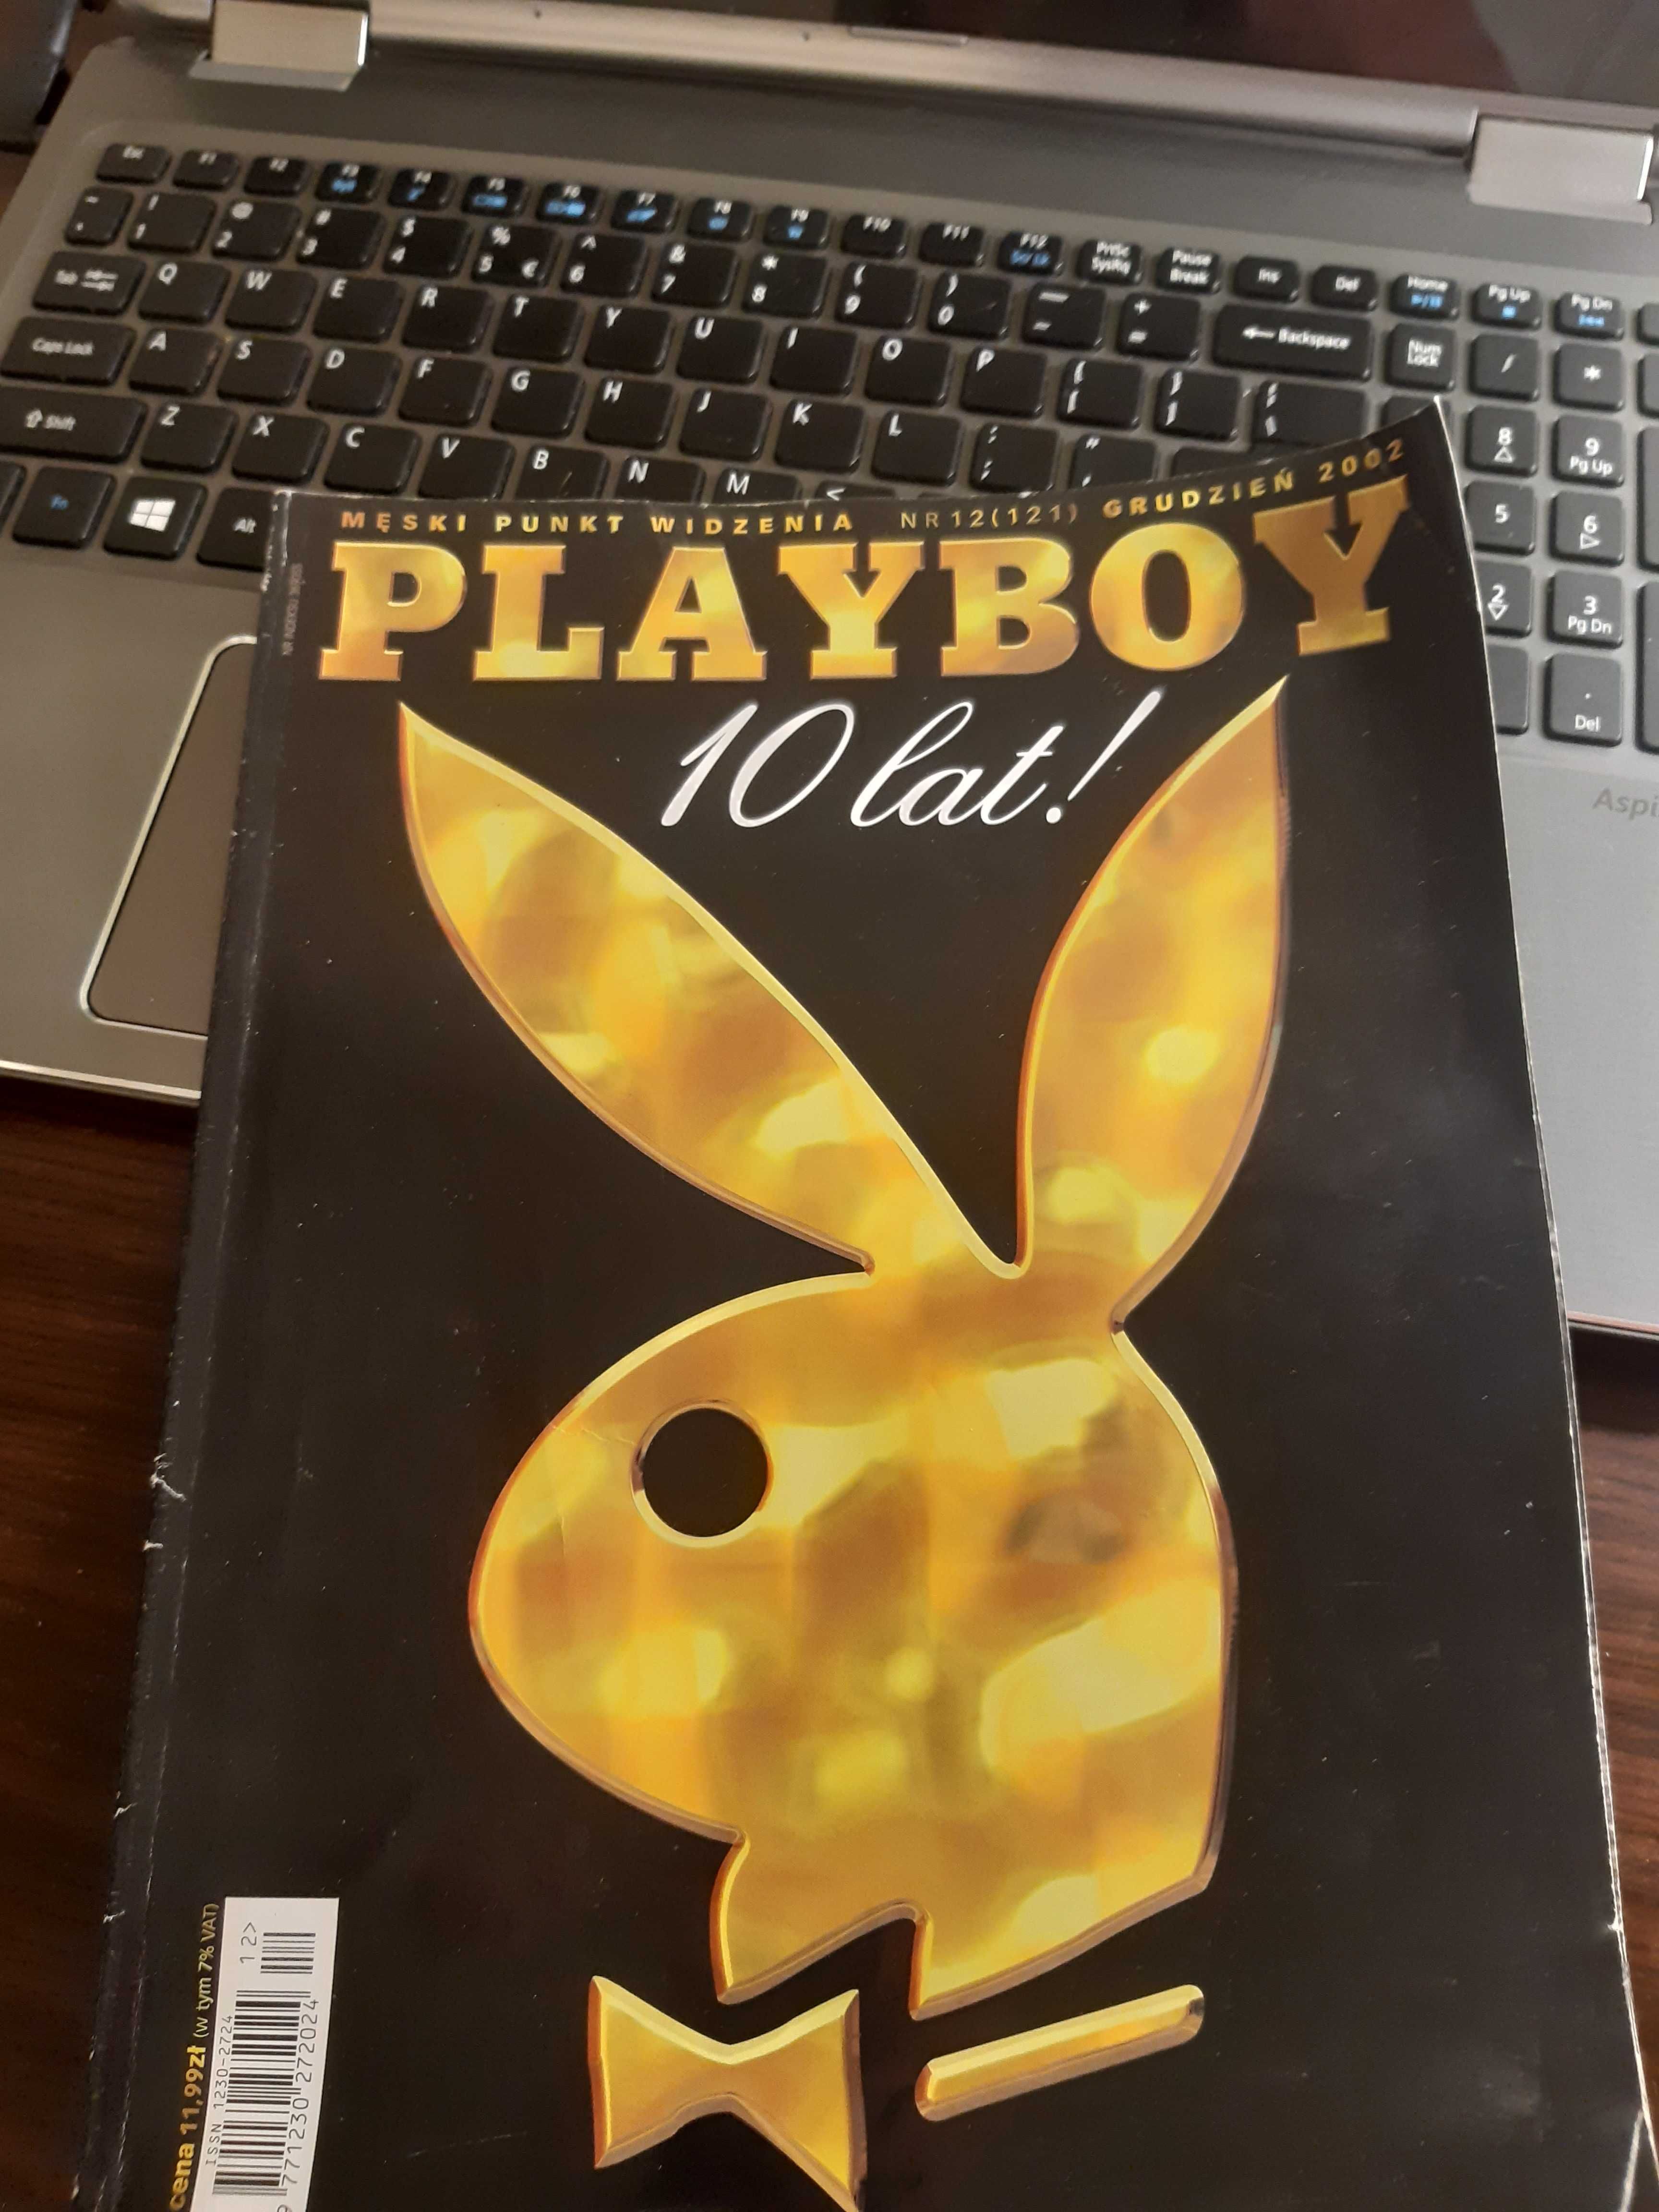 Gazeta 10 lat Playboy wydanie specjalne